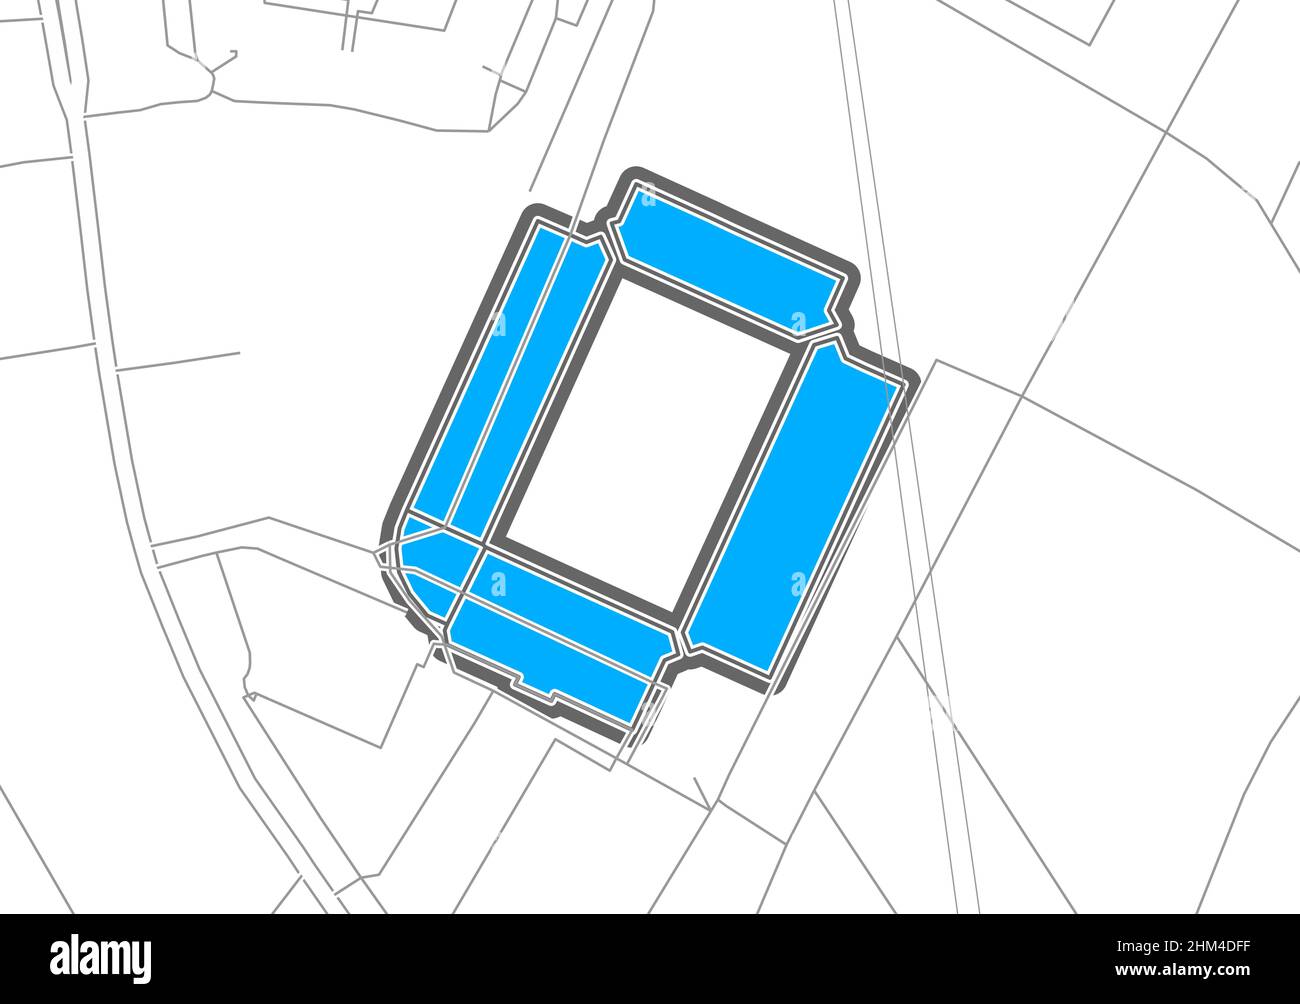 Hambourg, stade de football, carte vectorielle.La carte bundesliga statium a été tracée avec des zones blanches et des lignes pour les routes principales, les routes latérales. Illustration de Vecteur